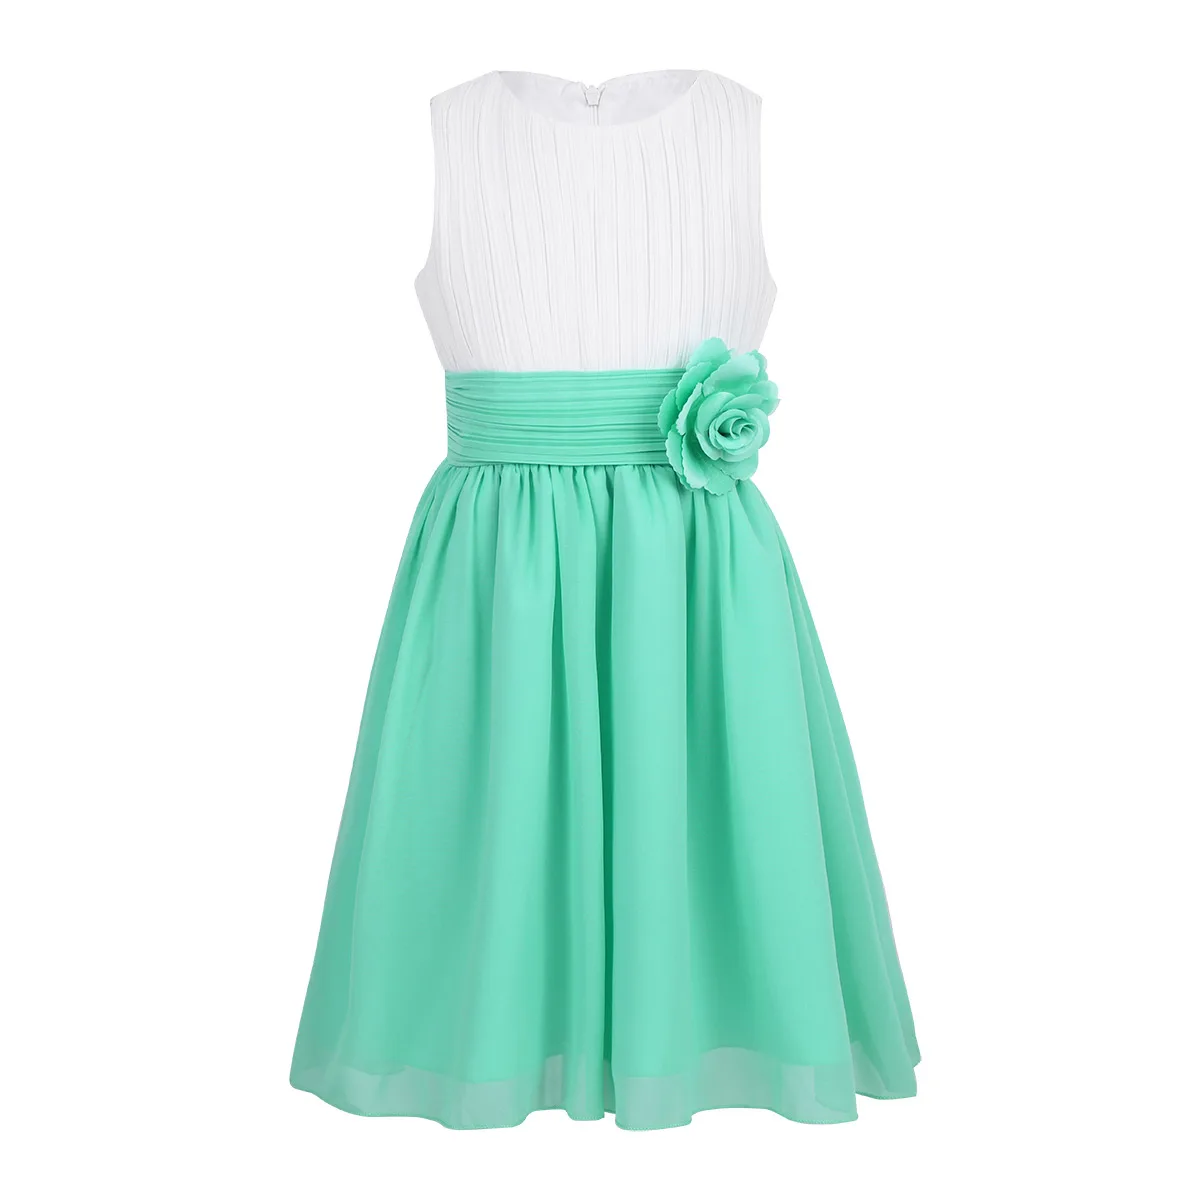 Iiniim/Детские плиссированные платья без рукавов с цветочным рисунком для девочек-подростков; платье принцессы для девочек; свадебное платье; платье для дня рождения; платье для вечеринки - Цвет: White Turquoise